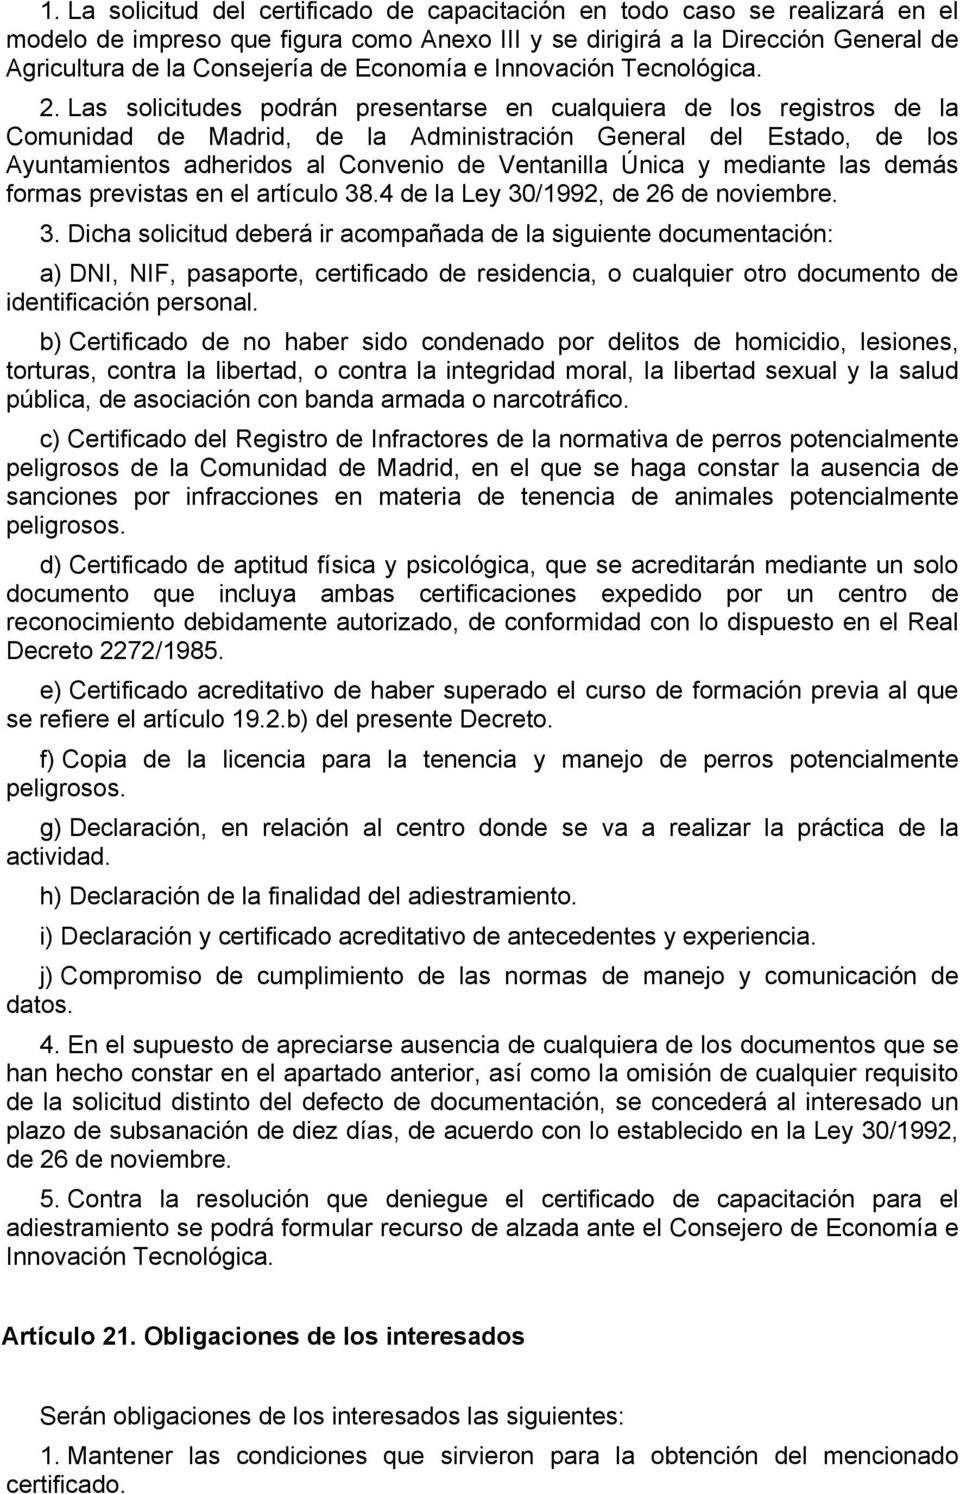 Las solicitudes podrán presentarse en cualquiera de los registros de la Comunidad de Madrid, de la Administración General del Estado, de los Ayuntamientos adheridos al Convenio de Ventanilla Única y